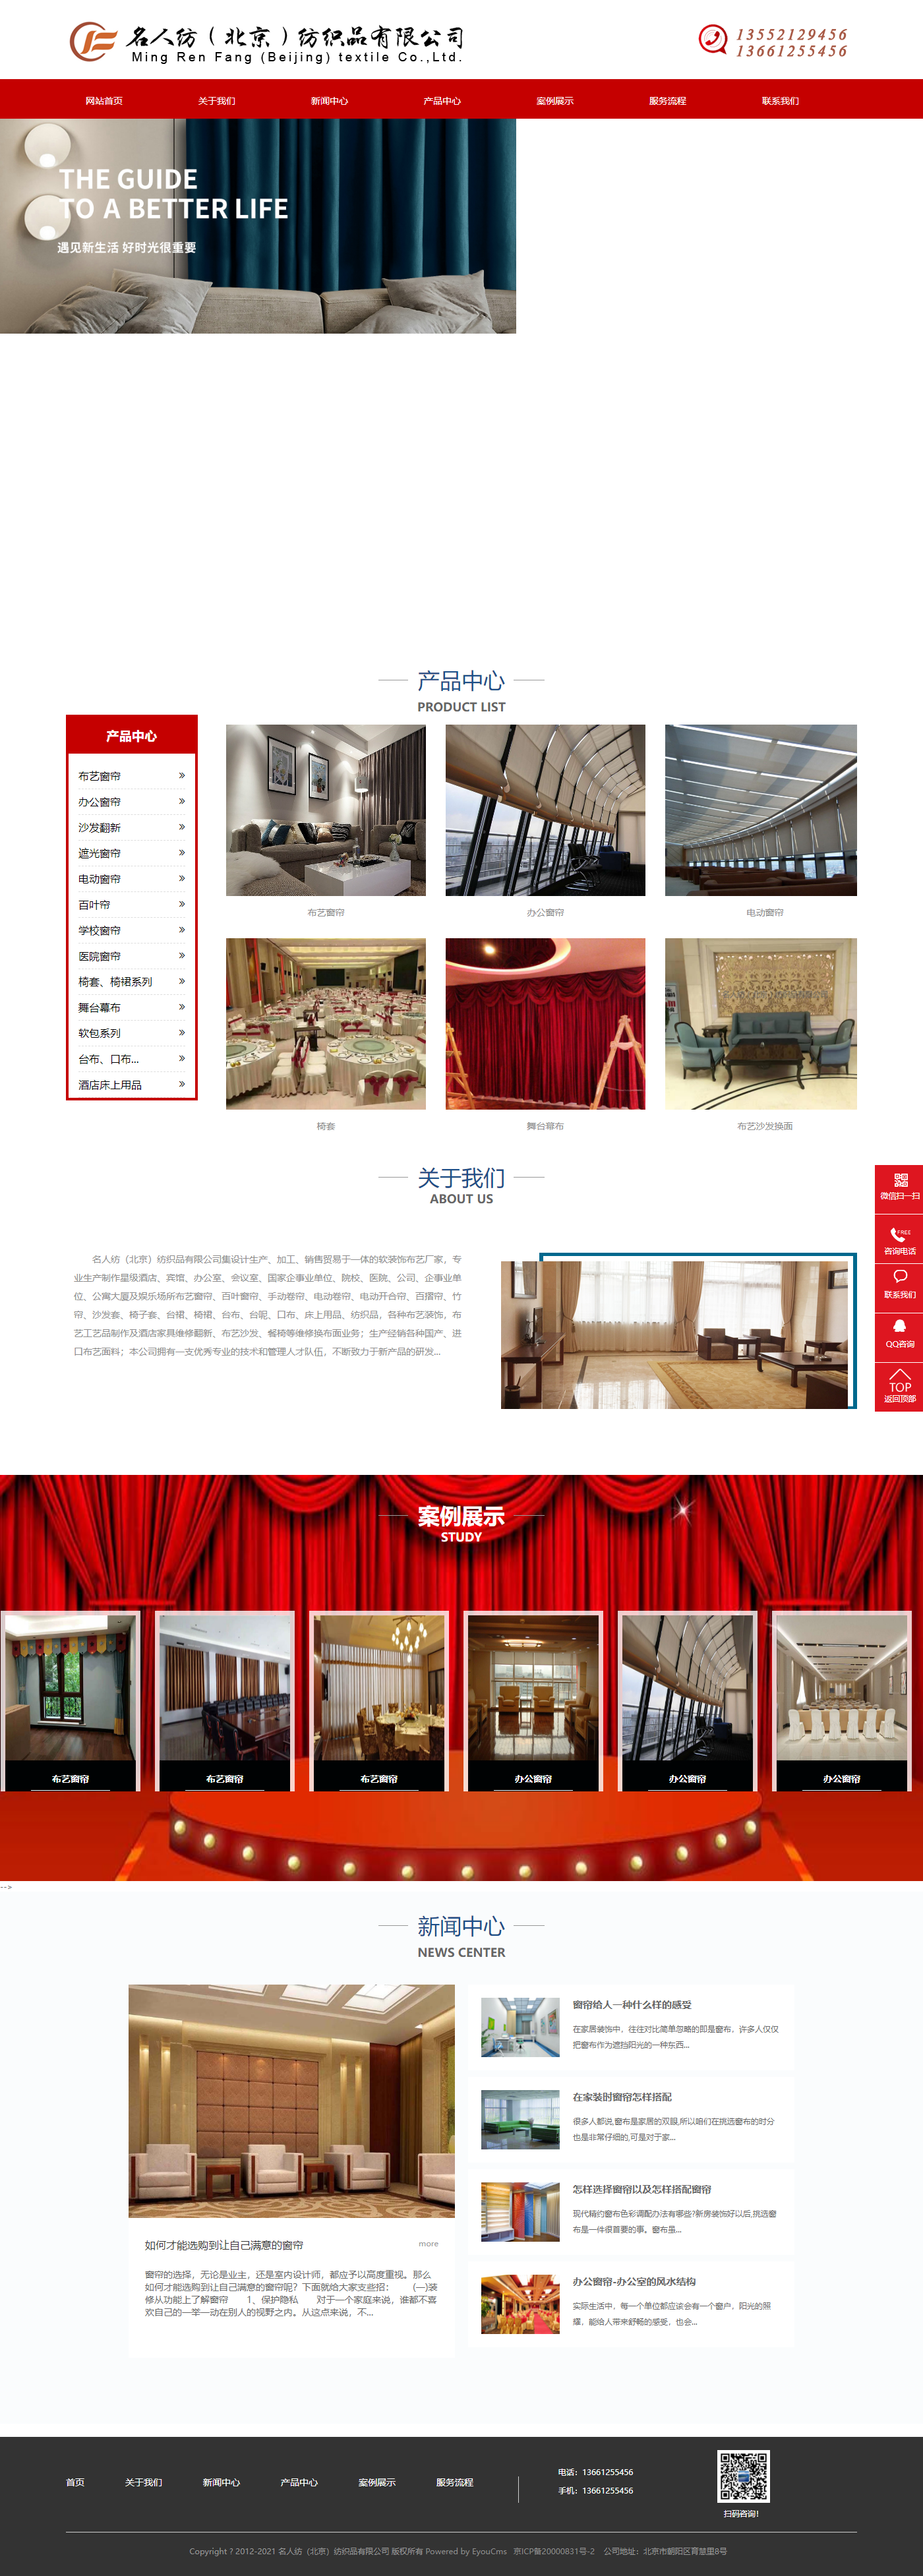 名人纺（北京）纺织品有限公司网站案例